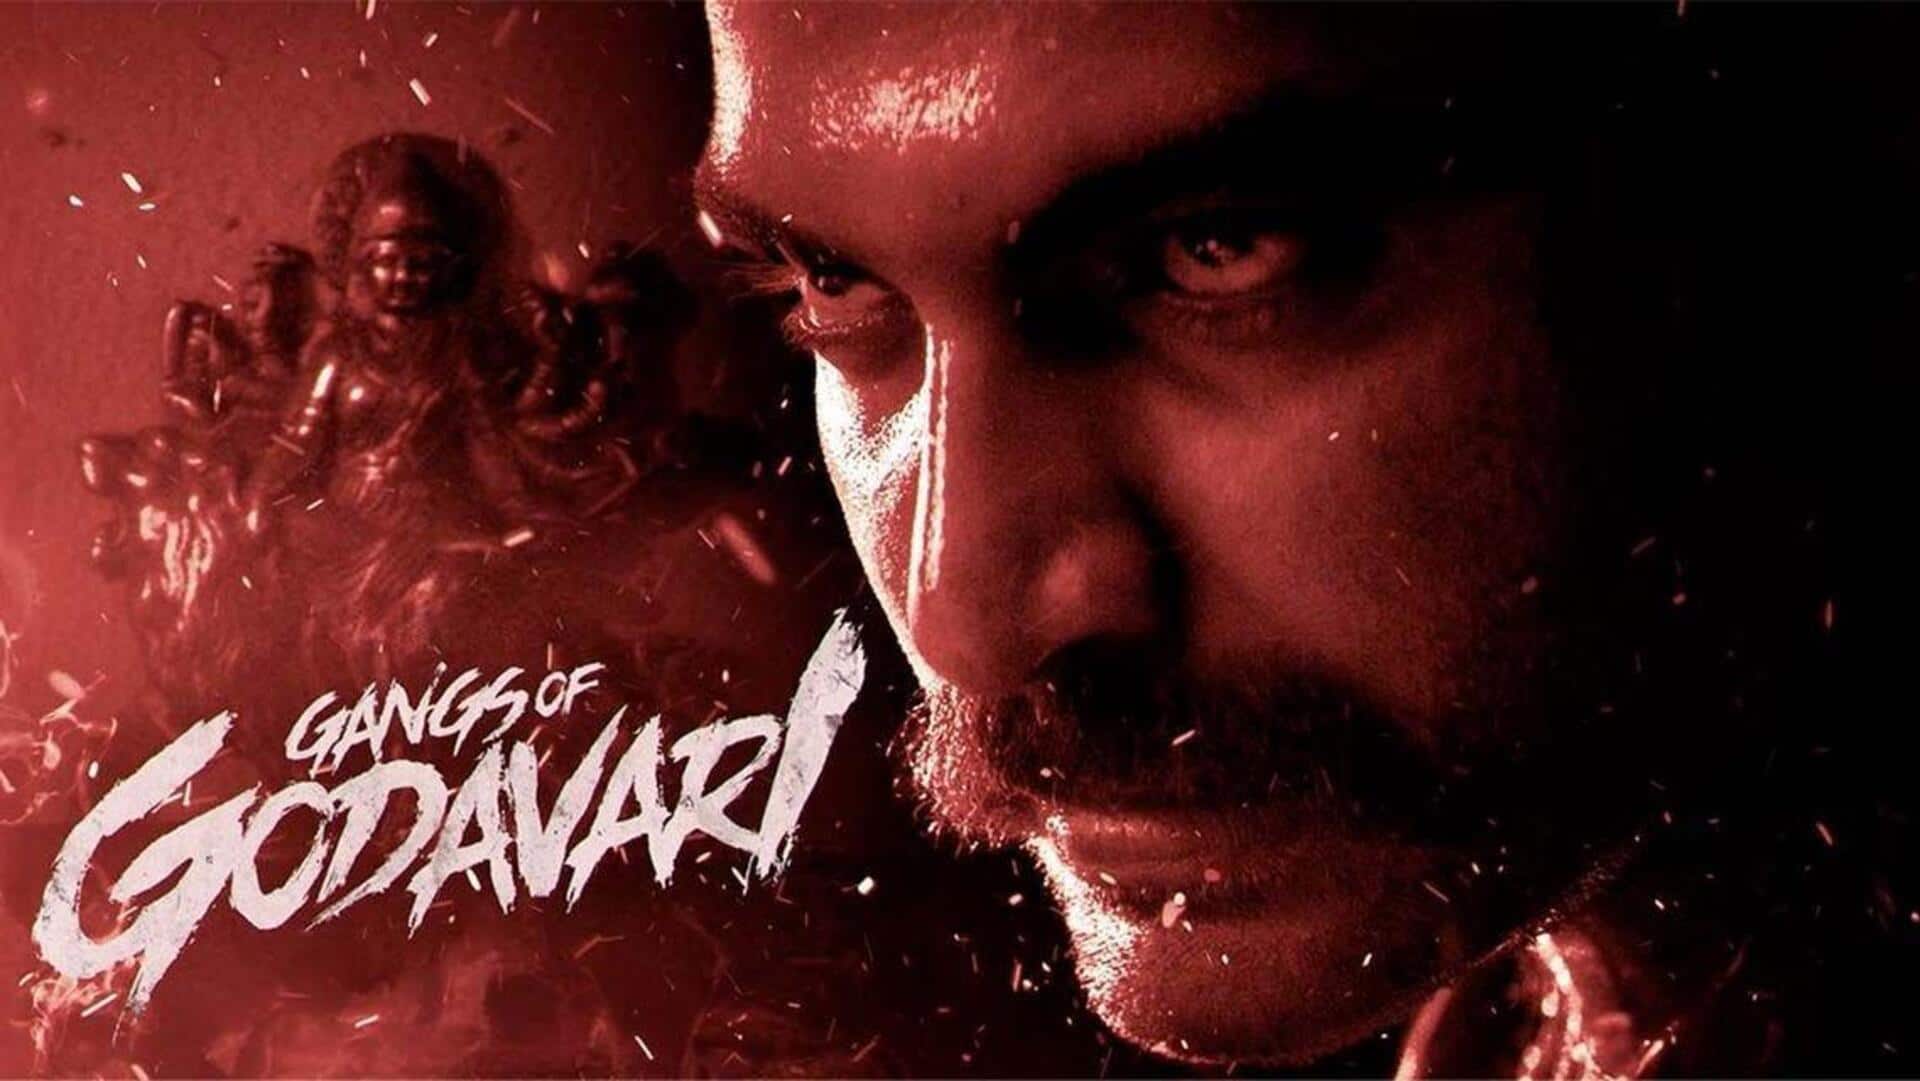 Box office: 'Gangs of Godavari' mints ₹4.5cr on Day 1